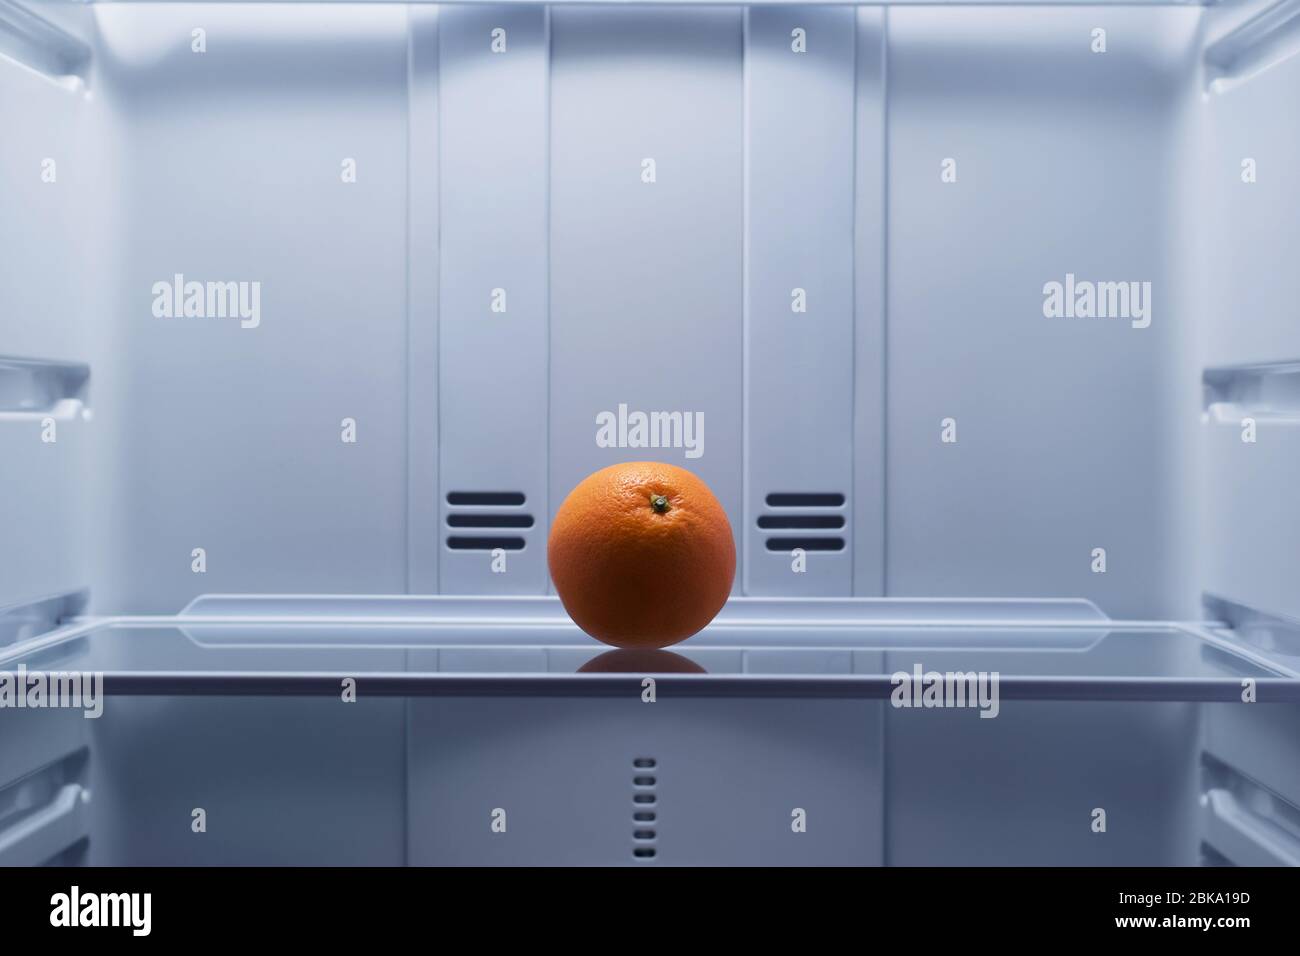 arancione, si trova sullo scaffale del frigorifero Foto Stock